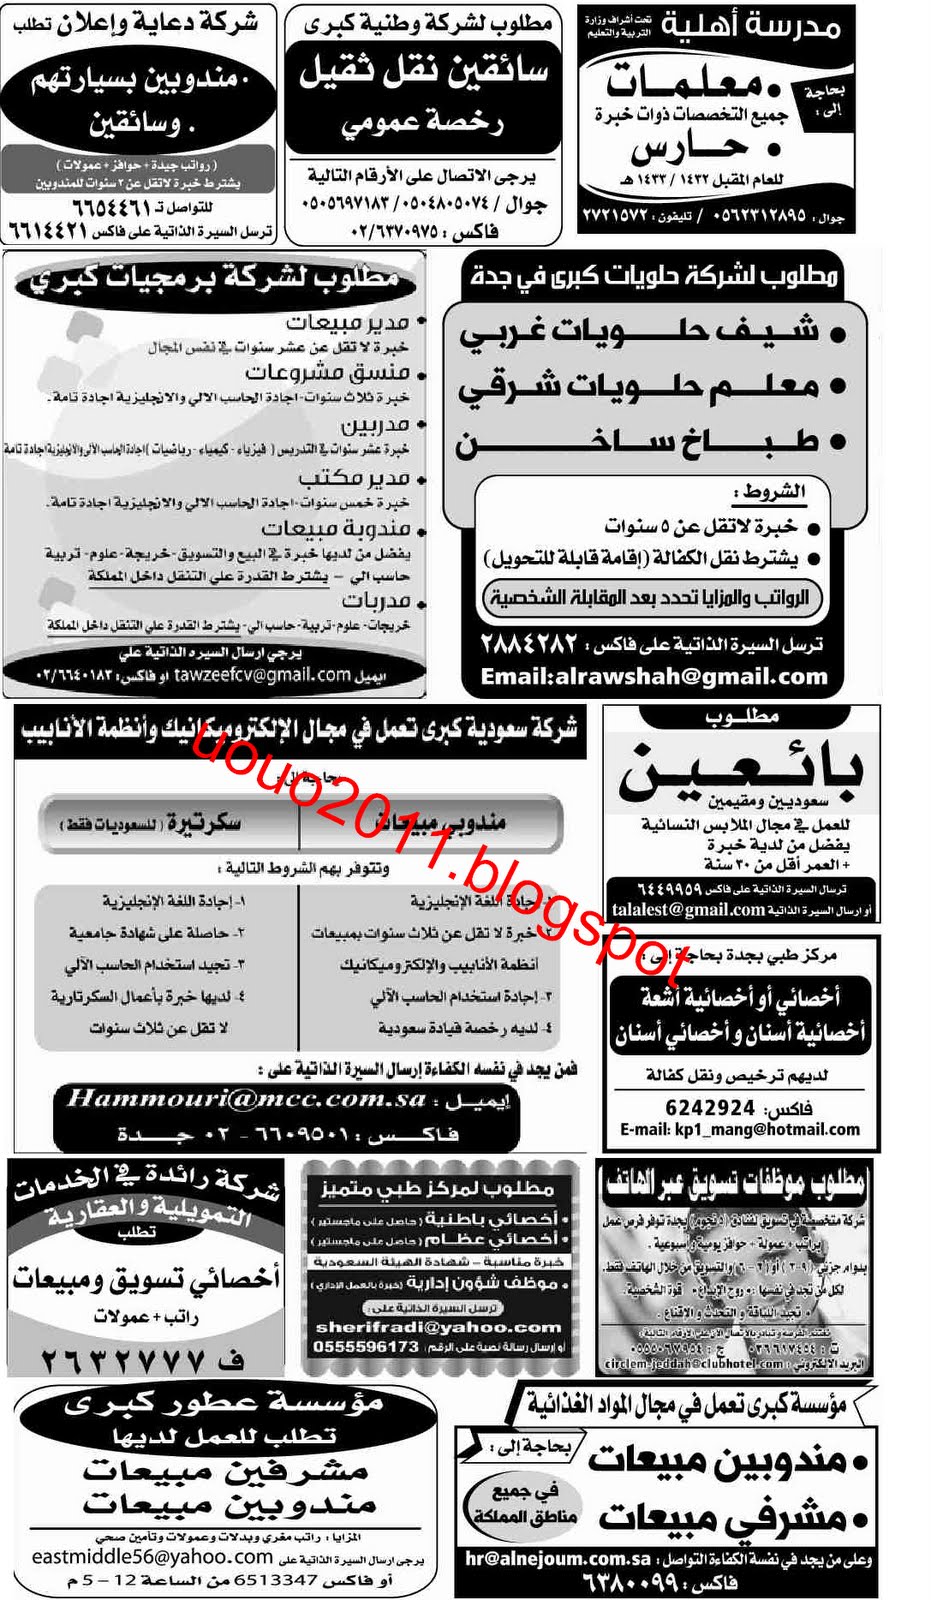 وظائف السعودية - وظائف جريدة الوسيلة جدة 14 مايو 2011 1